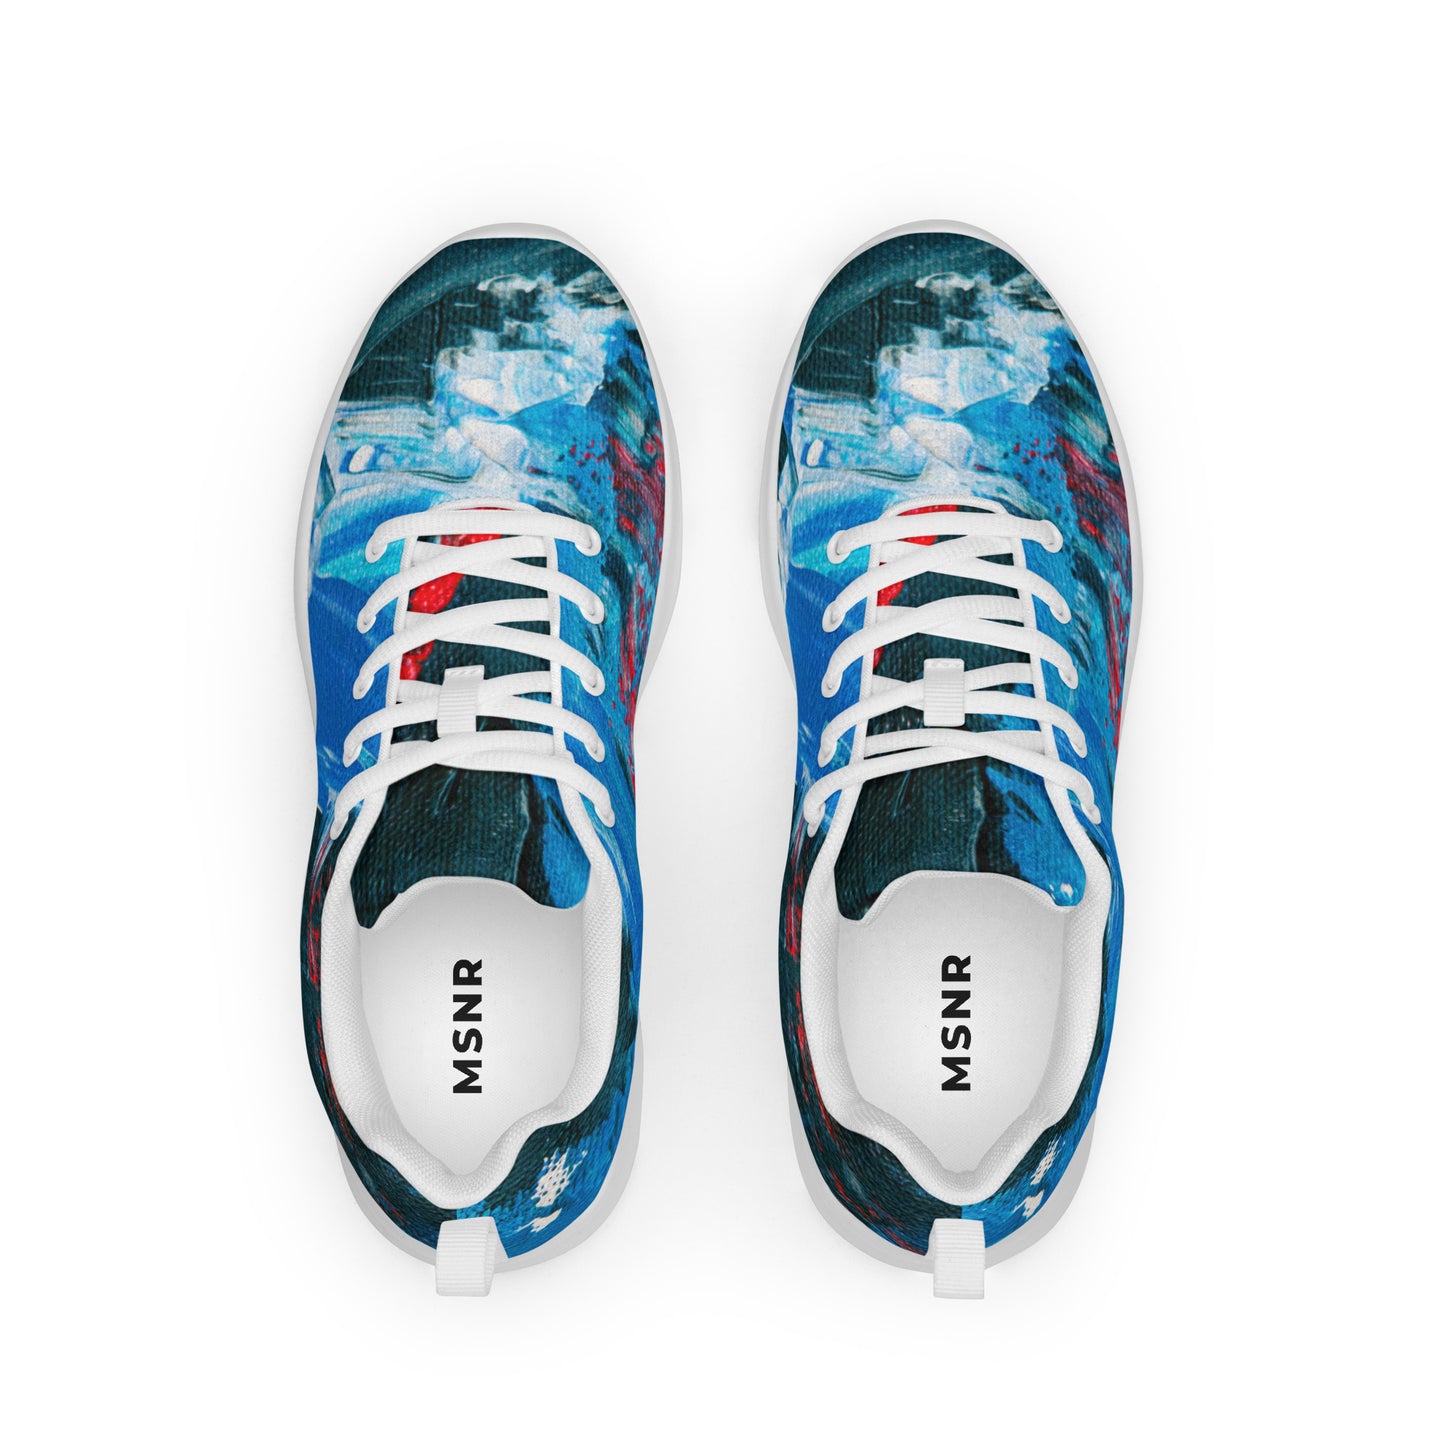 Oceans Men’s athletic shoes